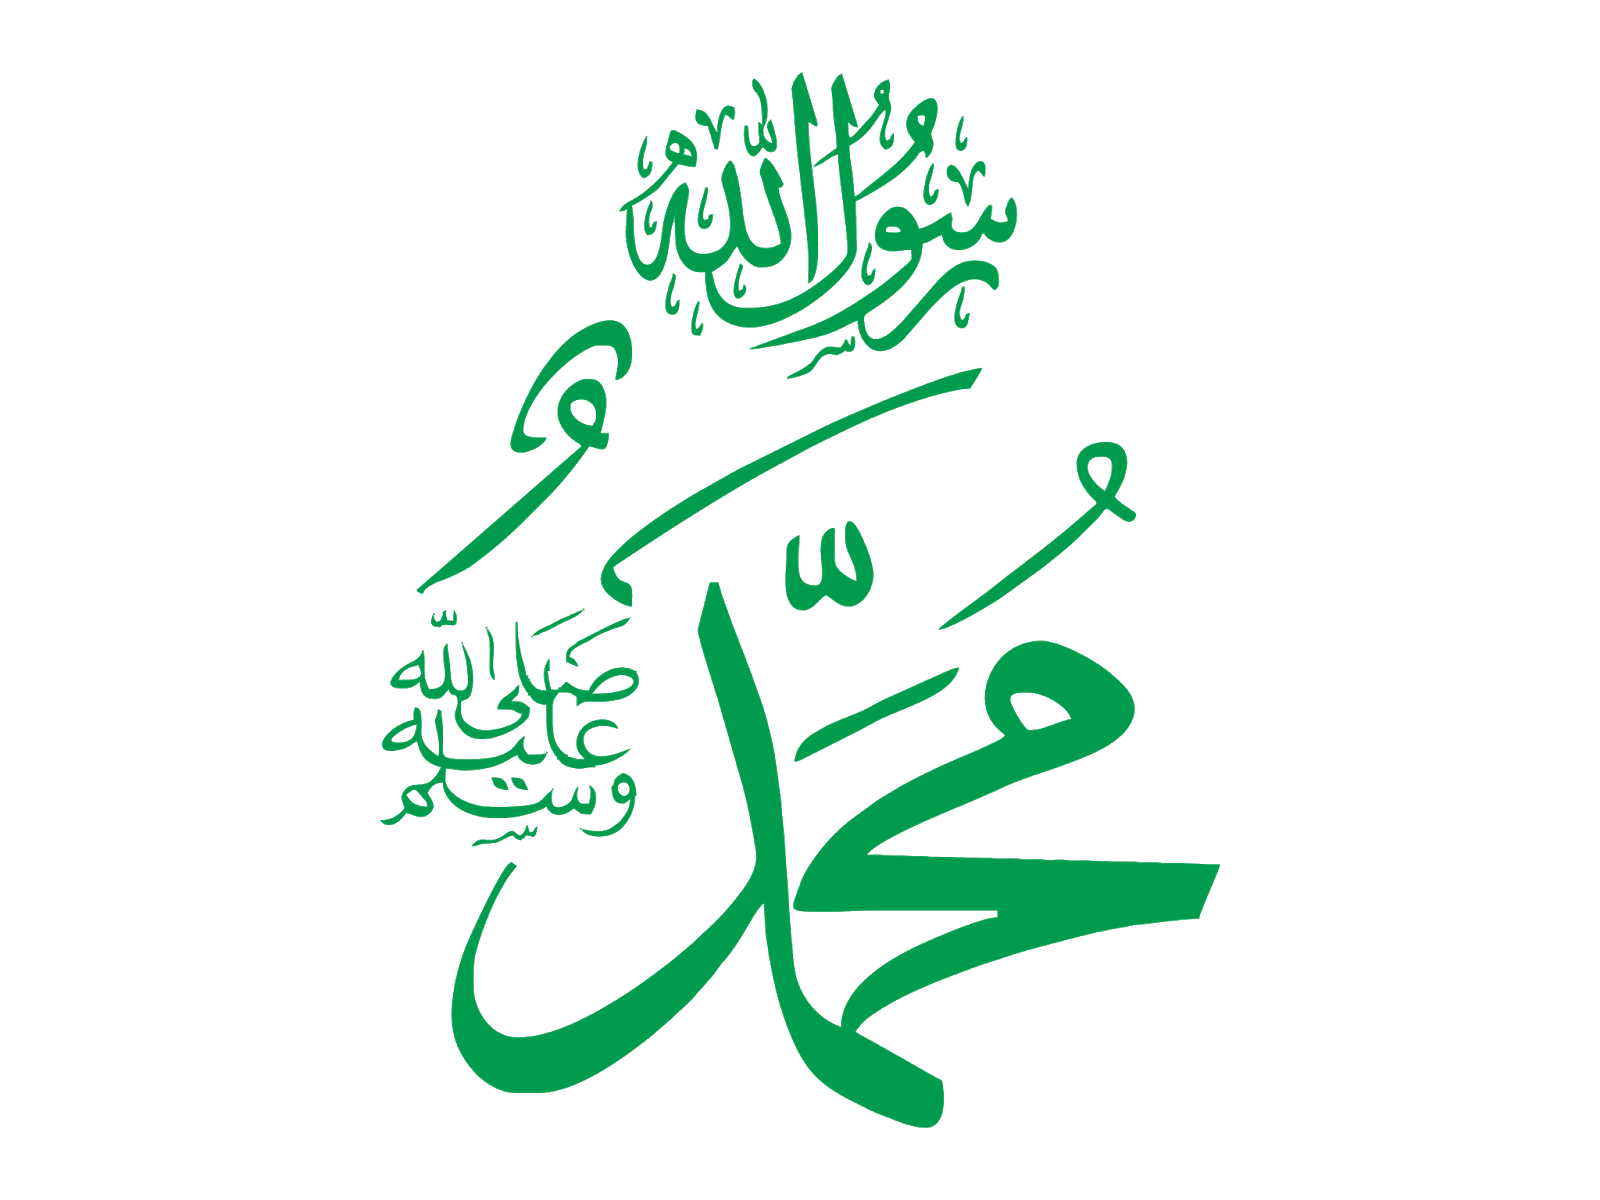 Пророк на арабском языке. Имя пророка Мухаммеда на арабском. Пророк Мухаммад каллиграфия. Имя пророка Мухаммеда на арабском языке. Пророк Мухаммед надпись на арабском.